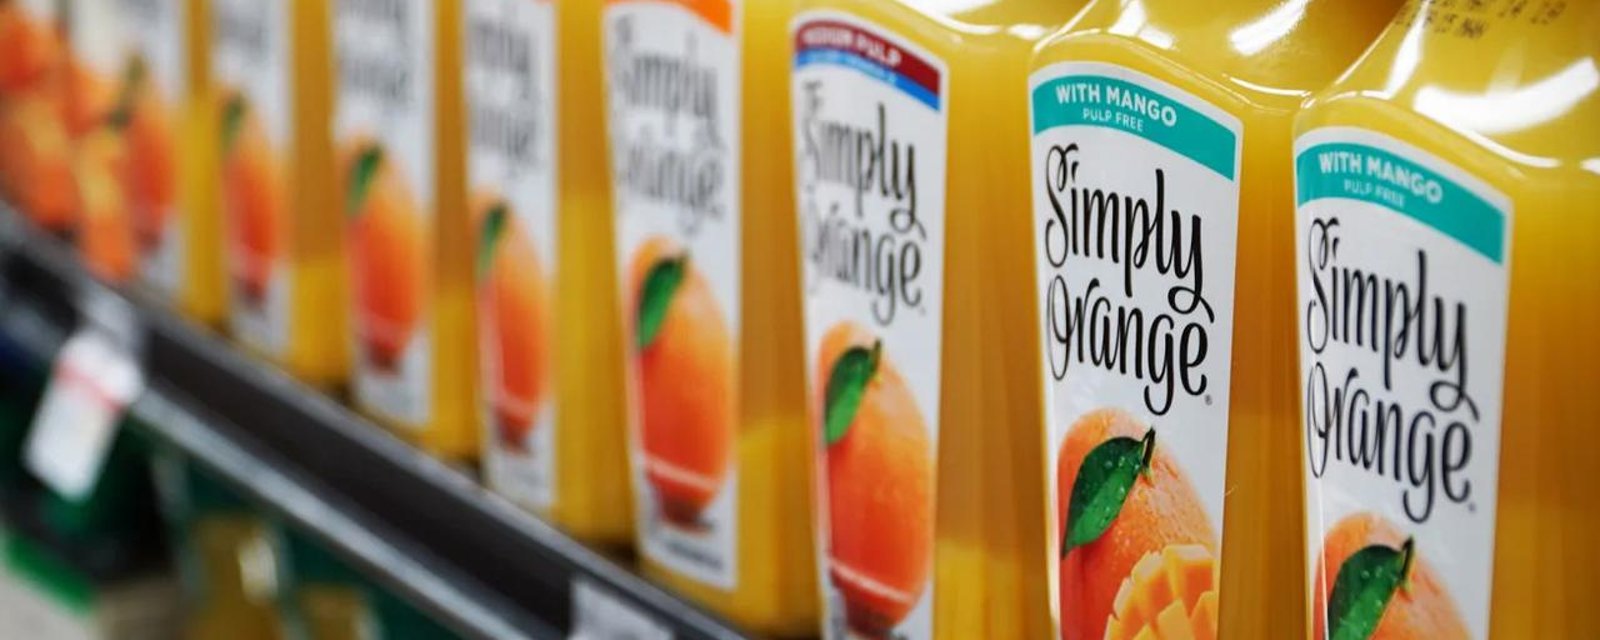 Un important facteur fera grimper le prix du jus d'orange dans les prochaines semaines 